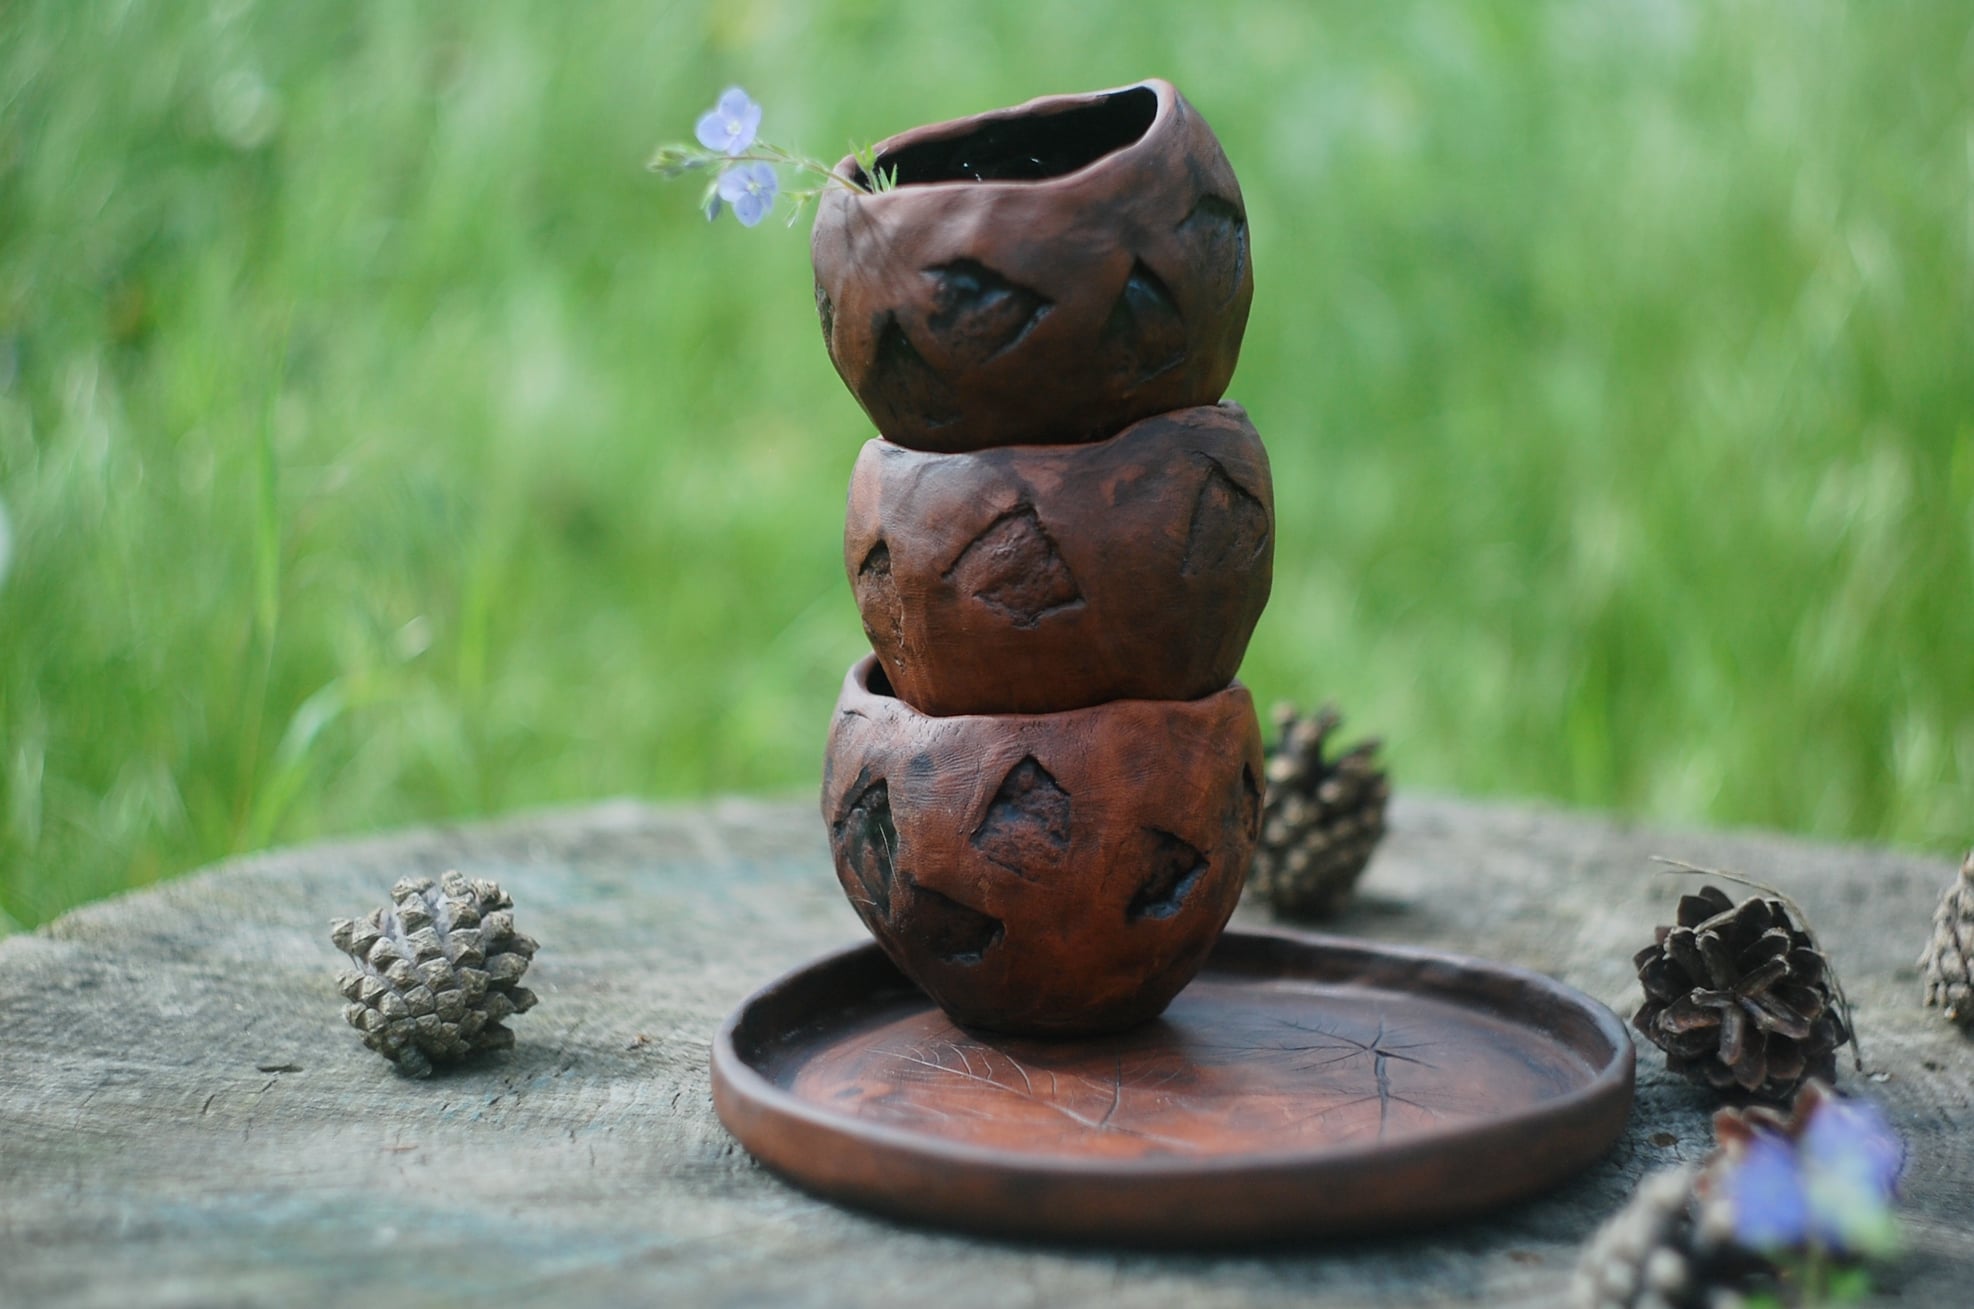 Handmade pottery mug set for 3 or 4 mugs "Stones" and large plate